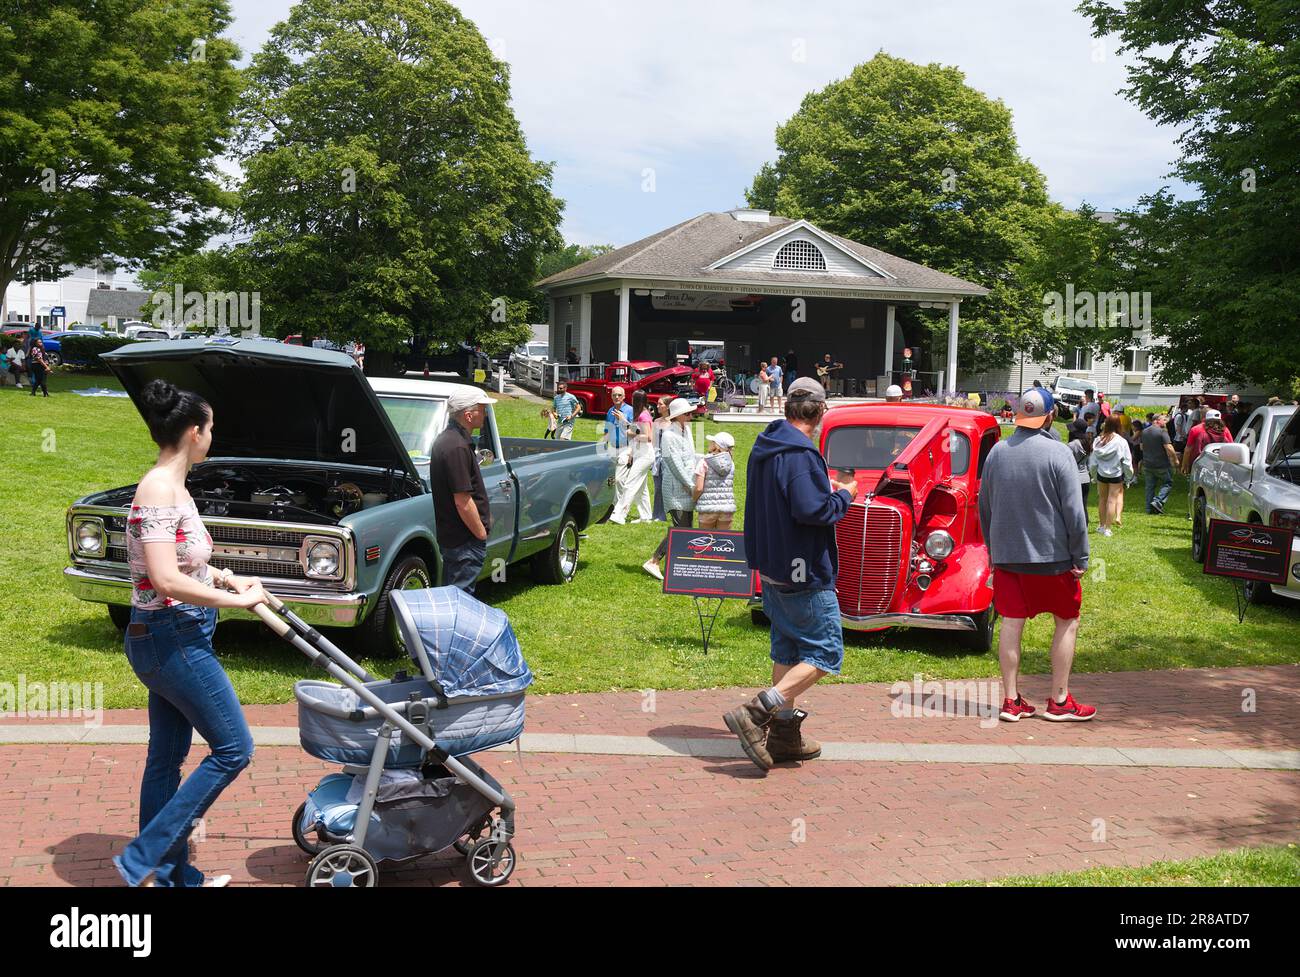 Salon de l'auto de la fête des pères - Hyannis, Massachusetts, Cape Cod - États-Unis. Les gens passent devant les automobiles exposées Banque D'Images